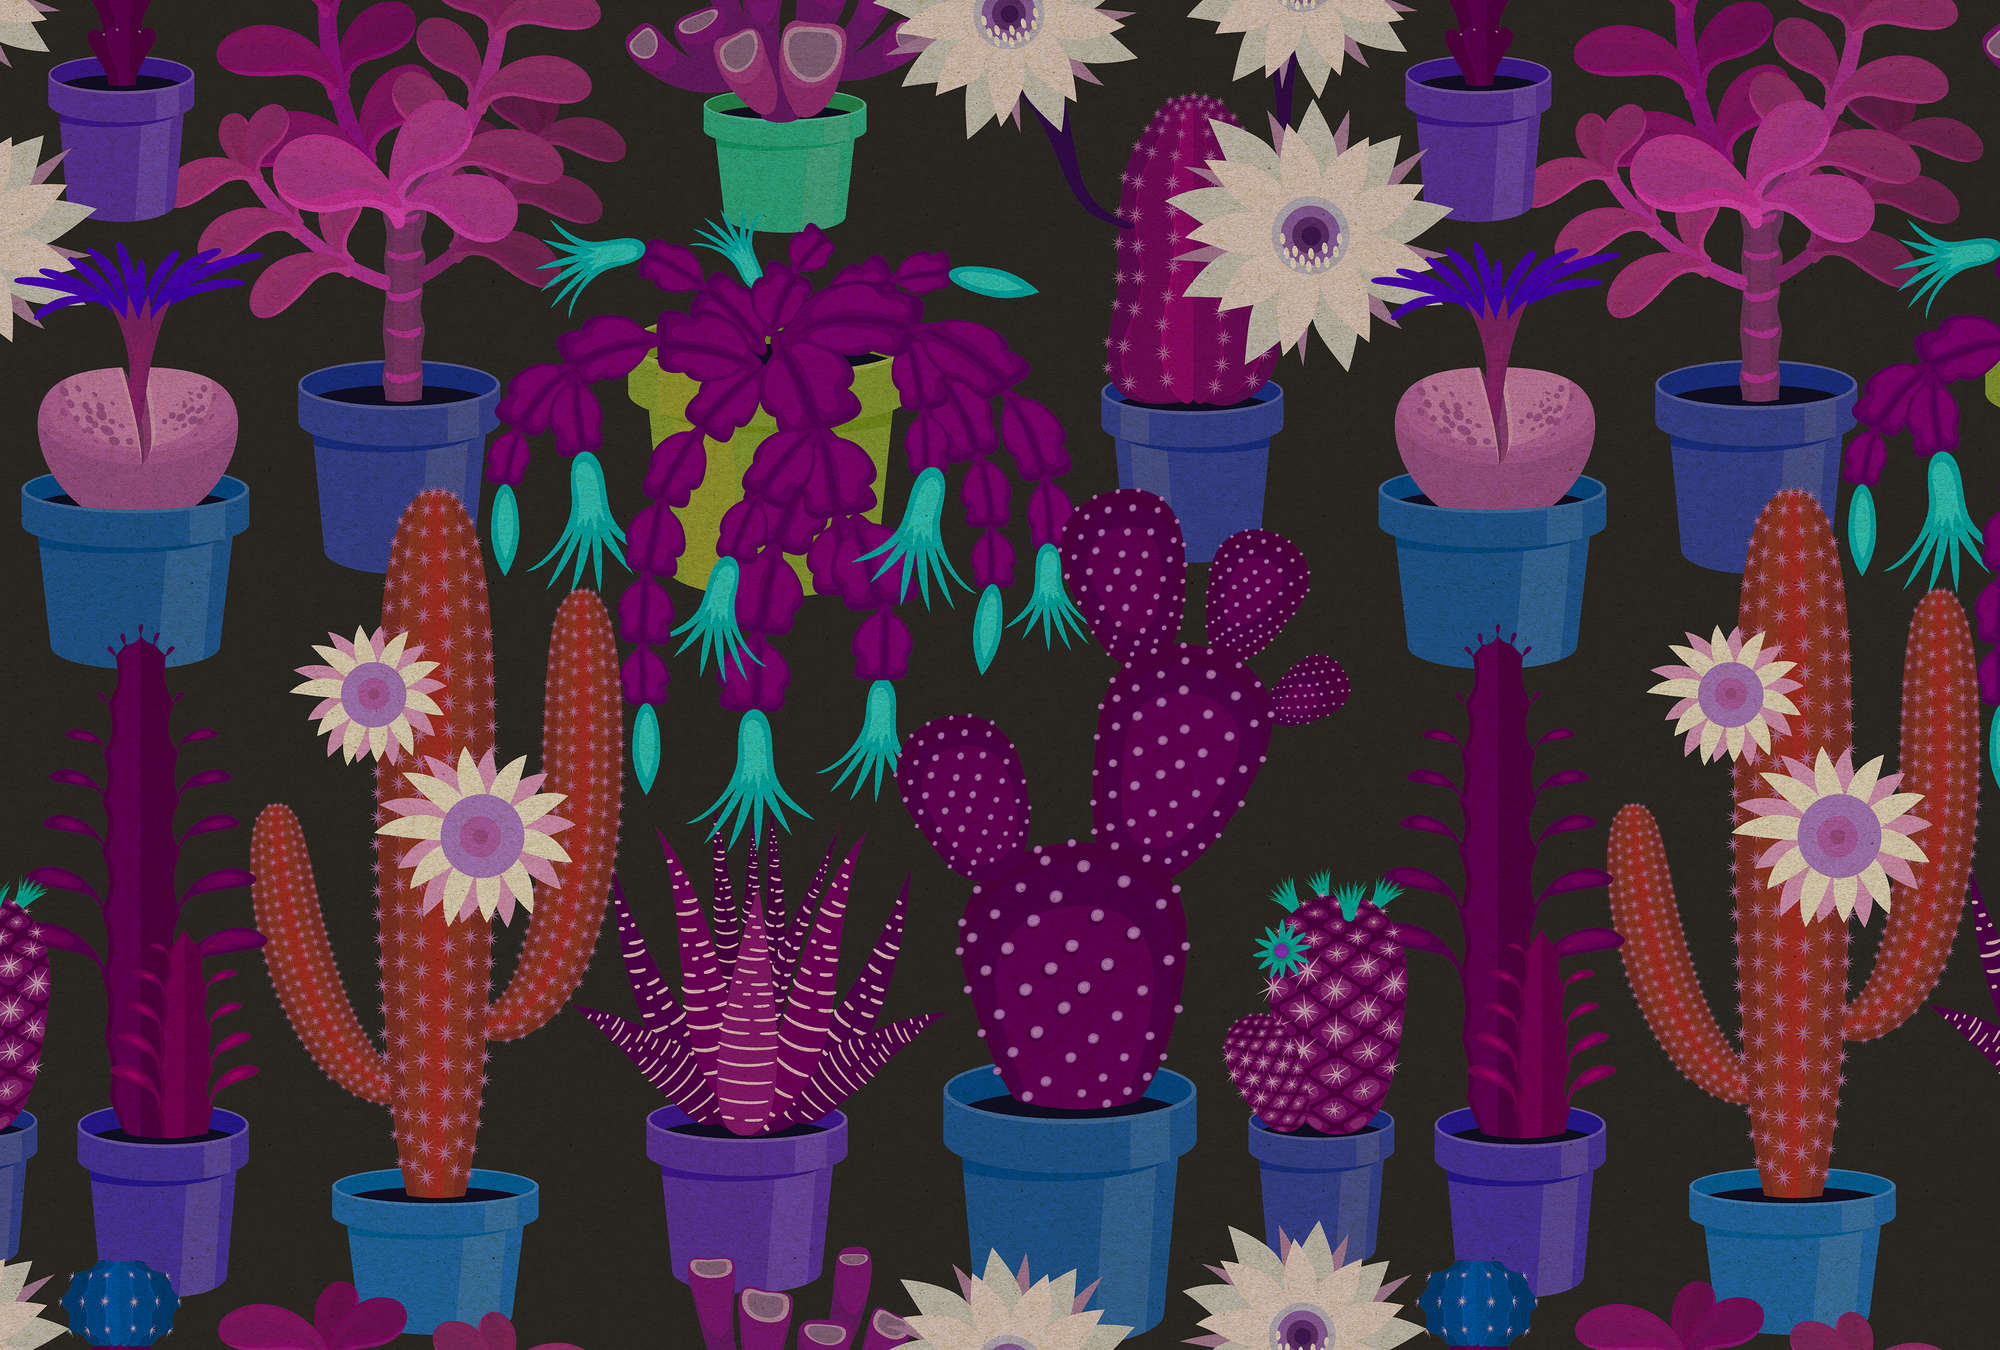             Giardino di cactus 1 - Carta da parati fotografica in struttura di cartone con cactus colorati in stile fumetto - Blu, arancione | Pile liscio opaco
        